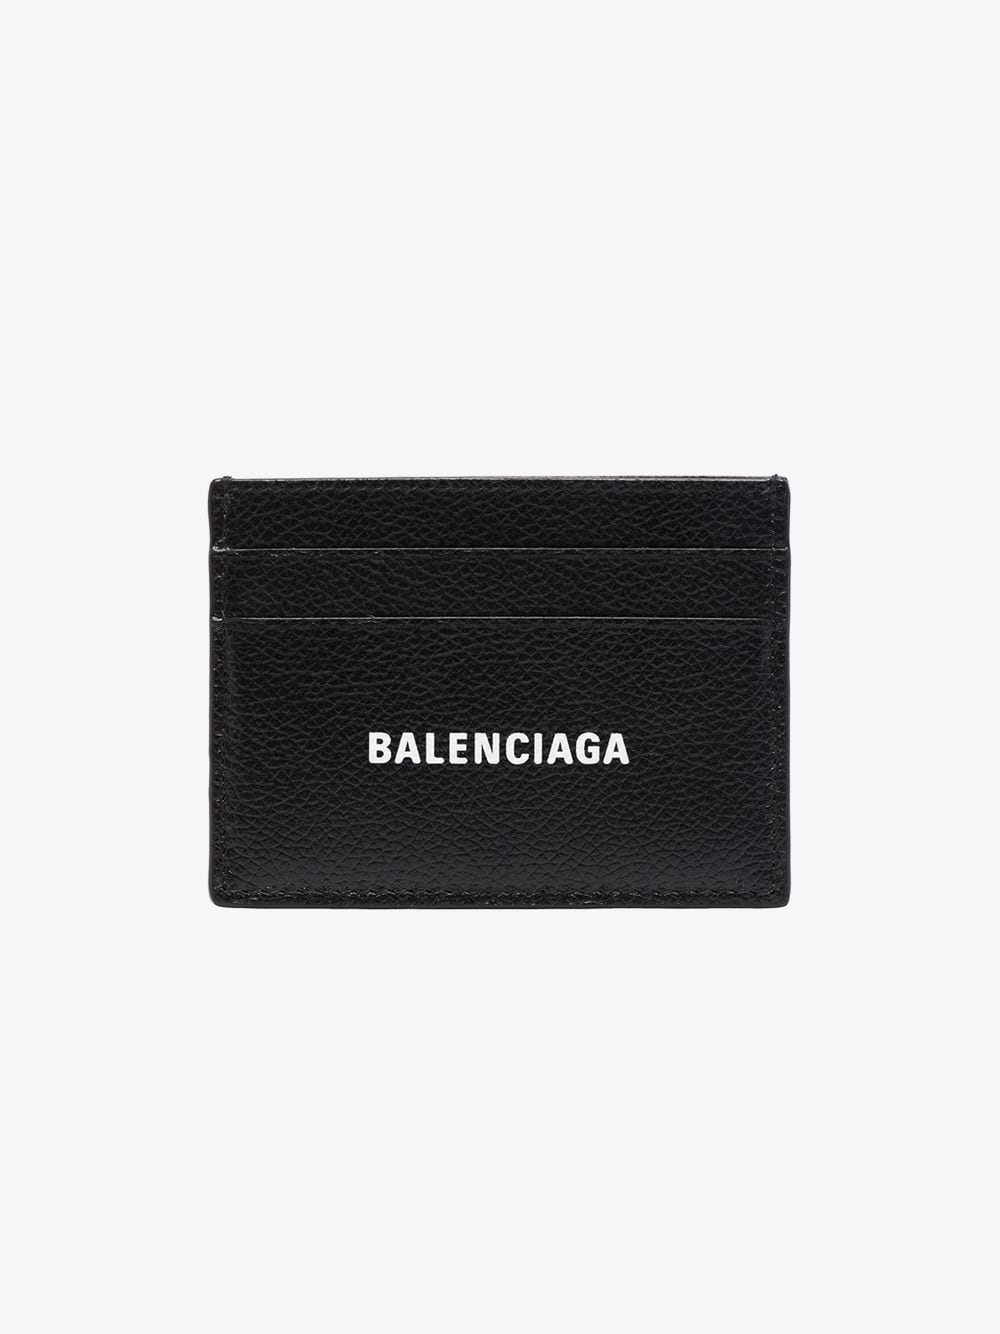 BALENCIAGA LOGO CARD CASE - 1